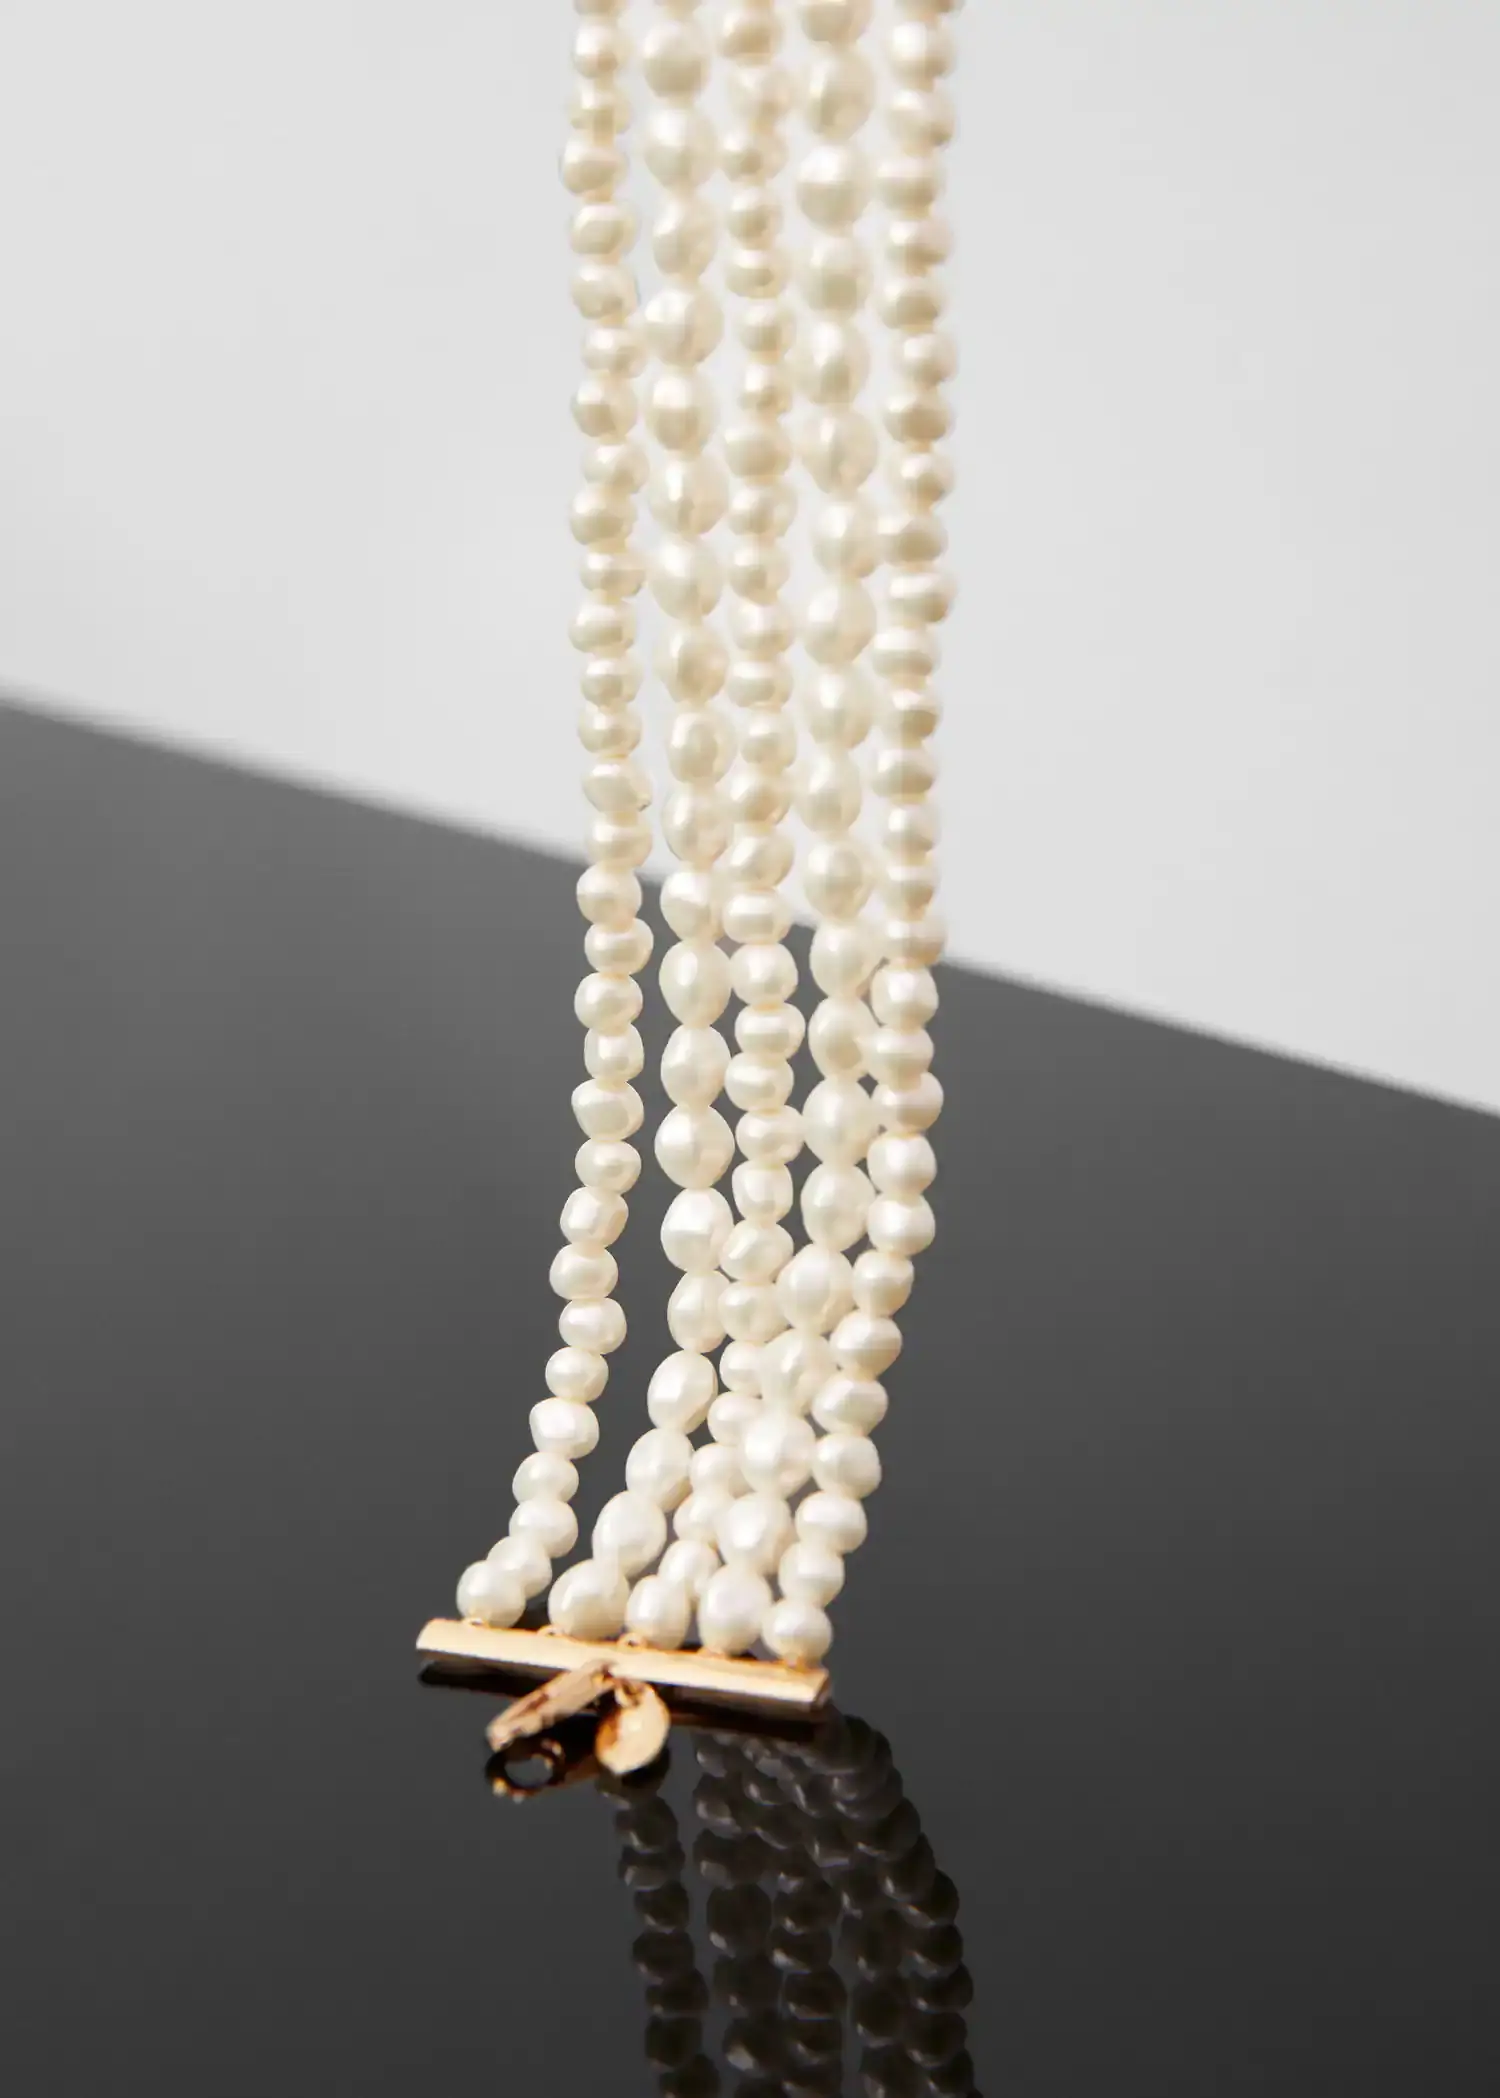 Mango Pearl choker necklace. 3